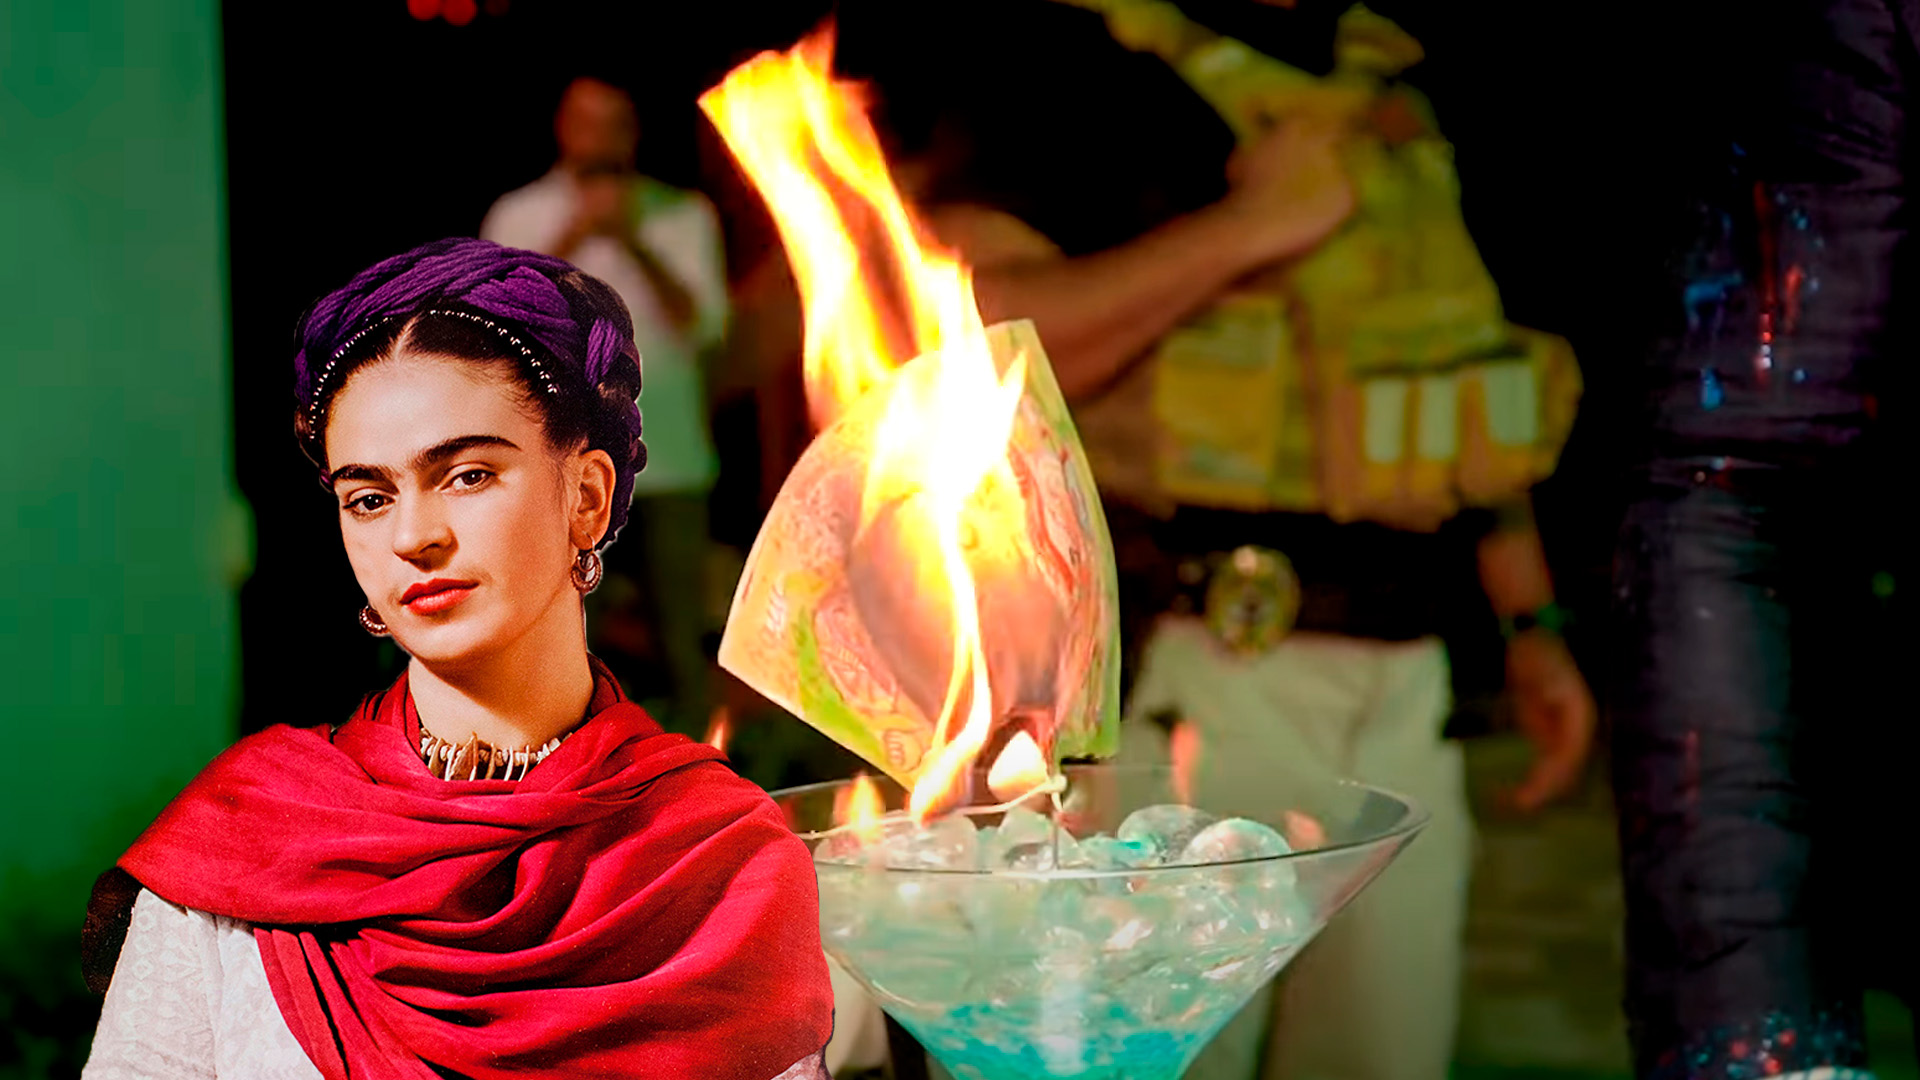 El mundo del arte mexicano está conmocionado debido a que un empresario decidió quemar la obra de Frida Kahlo para pasarlo a arte digital (Foto: especial)